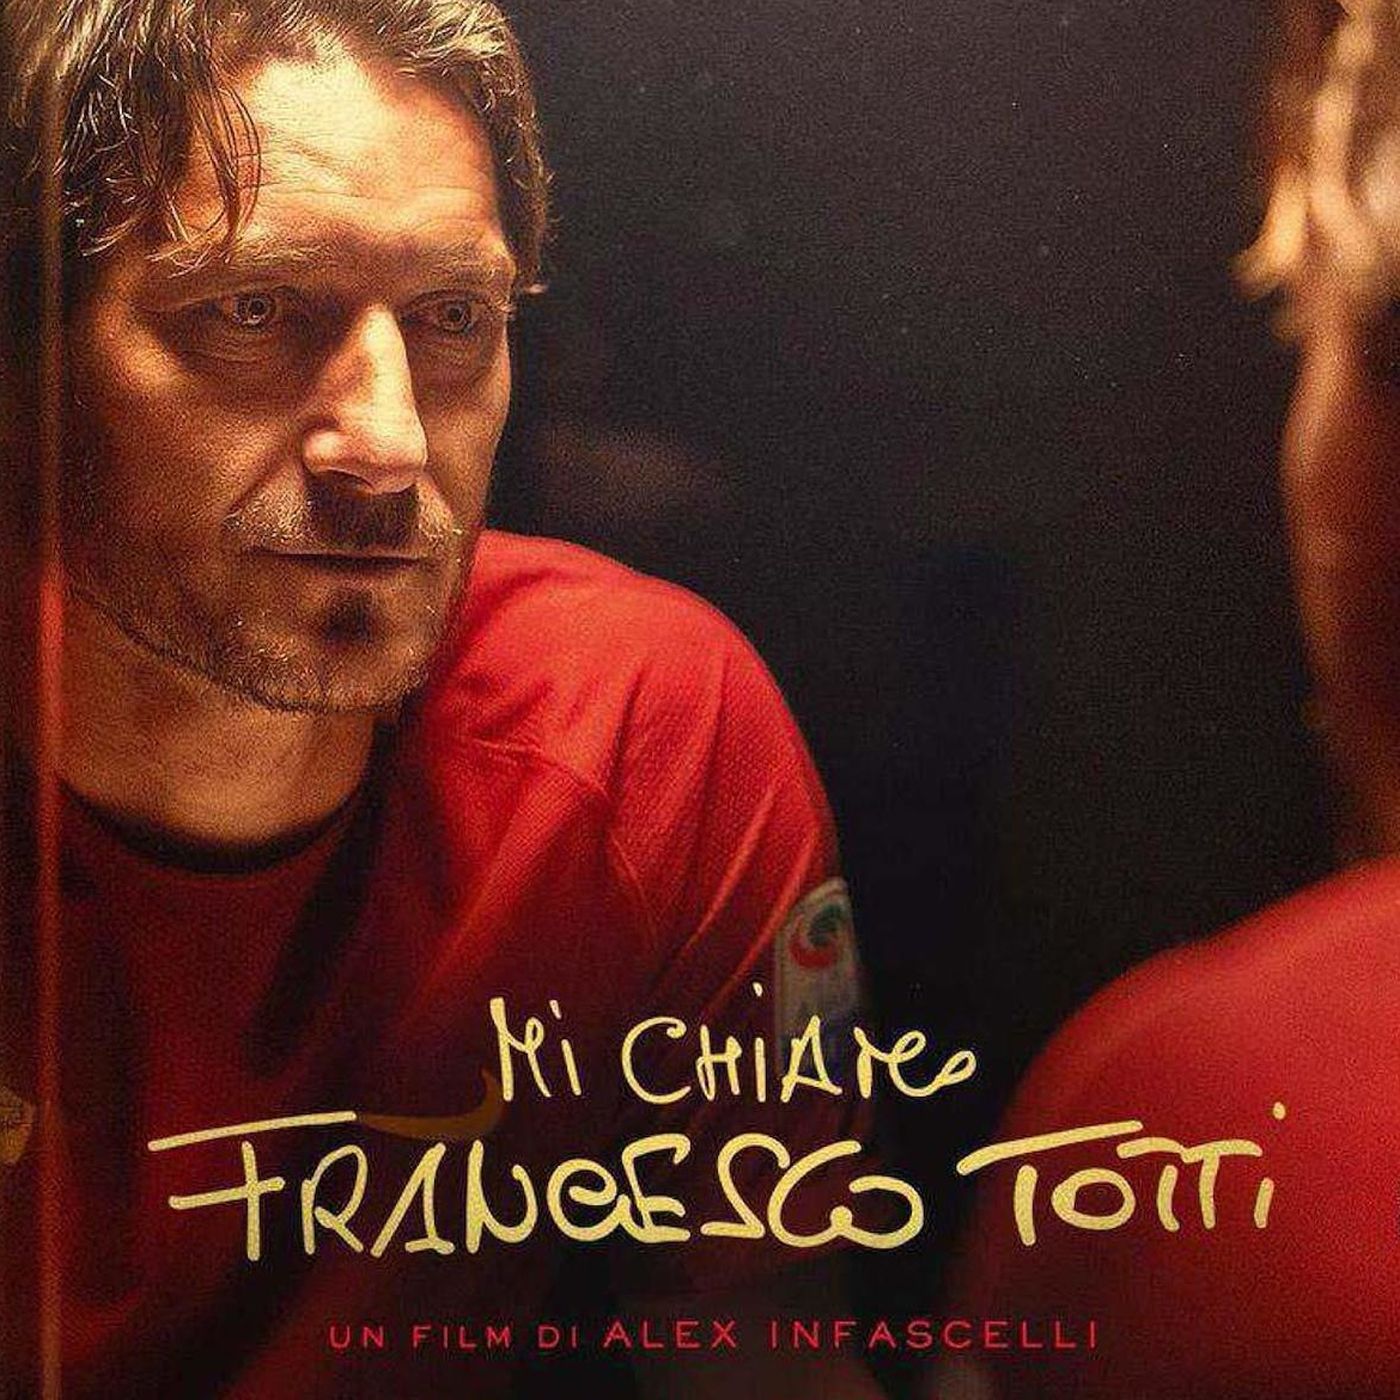 Mi chiamo Francesco Totti: recensione film documentario